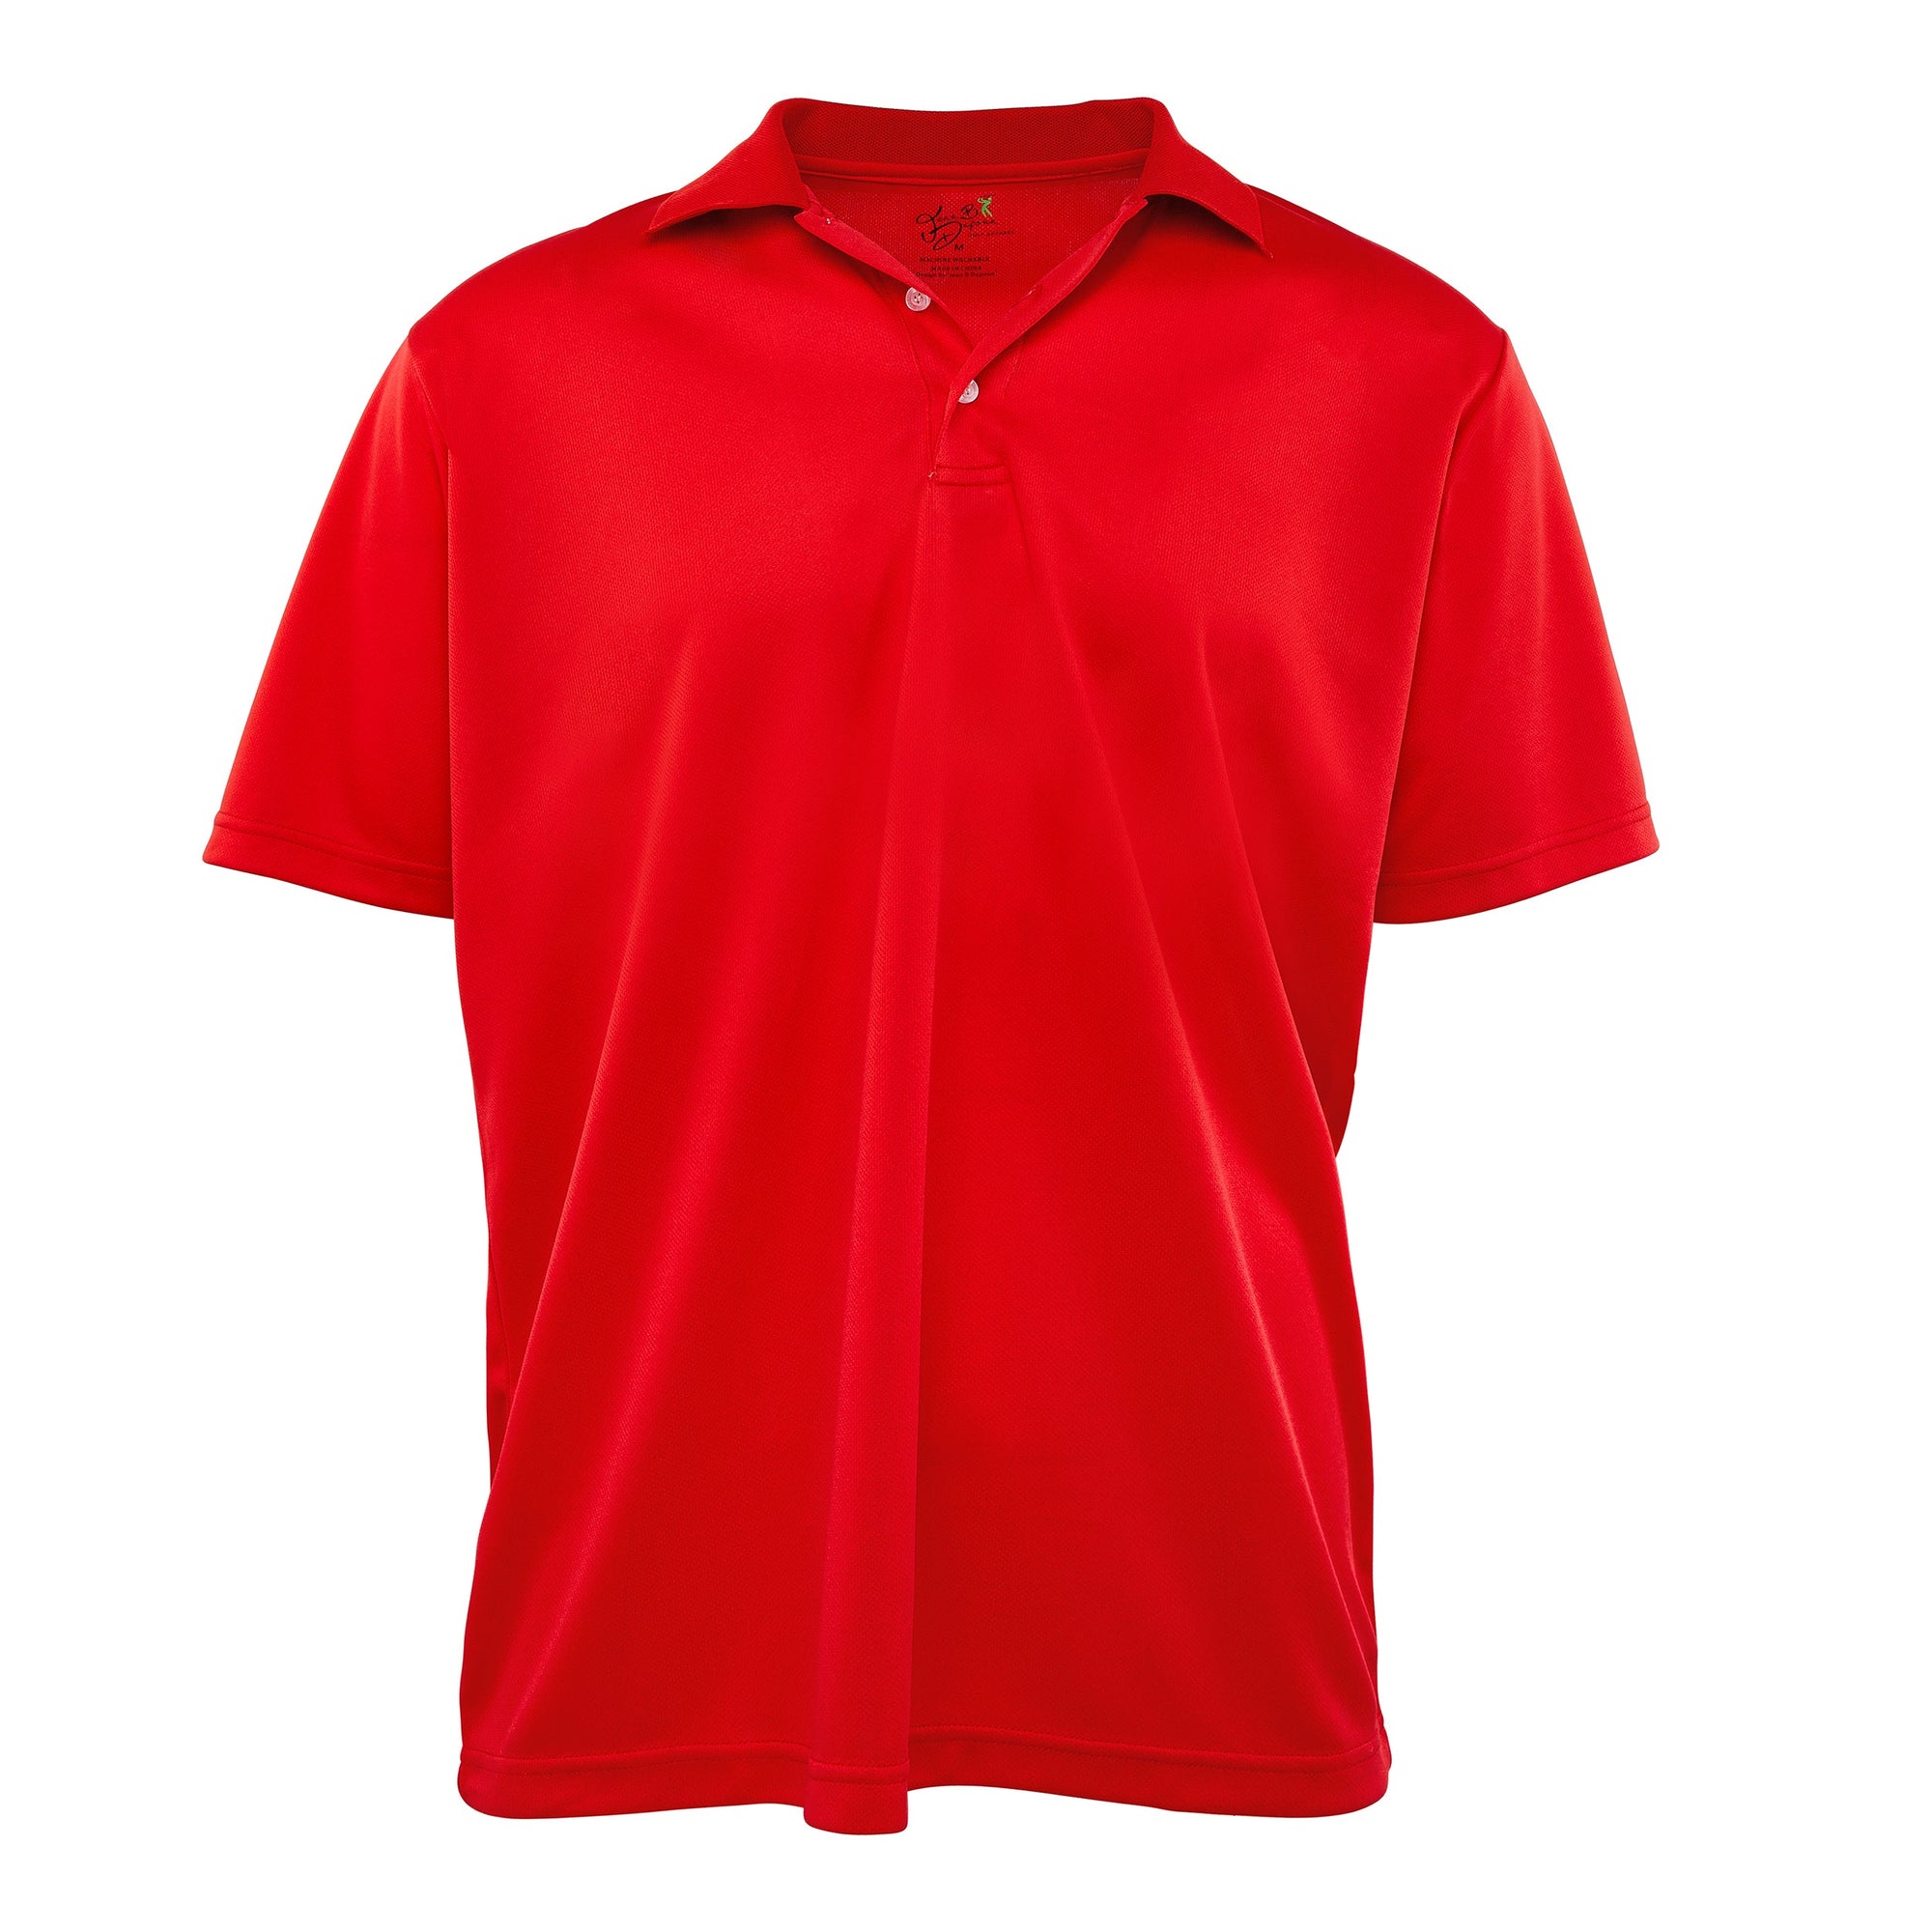 golf dri fit shirts